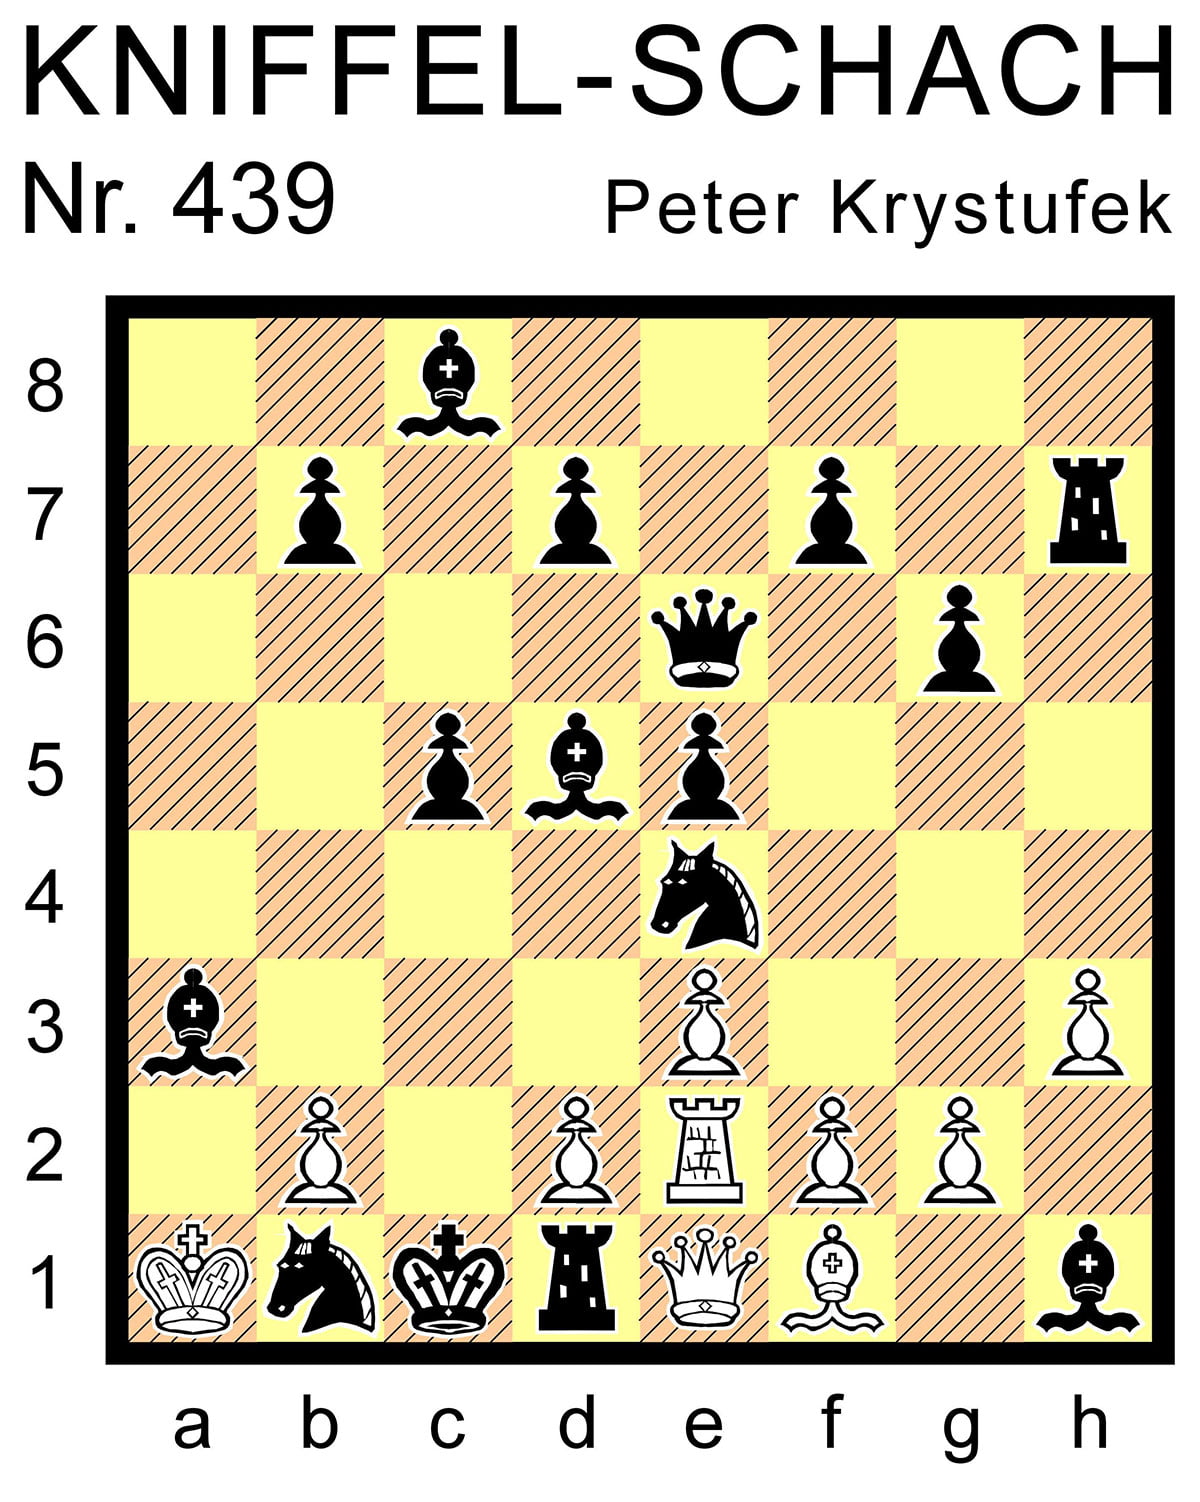 Kniffel-Schach Nr. 439